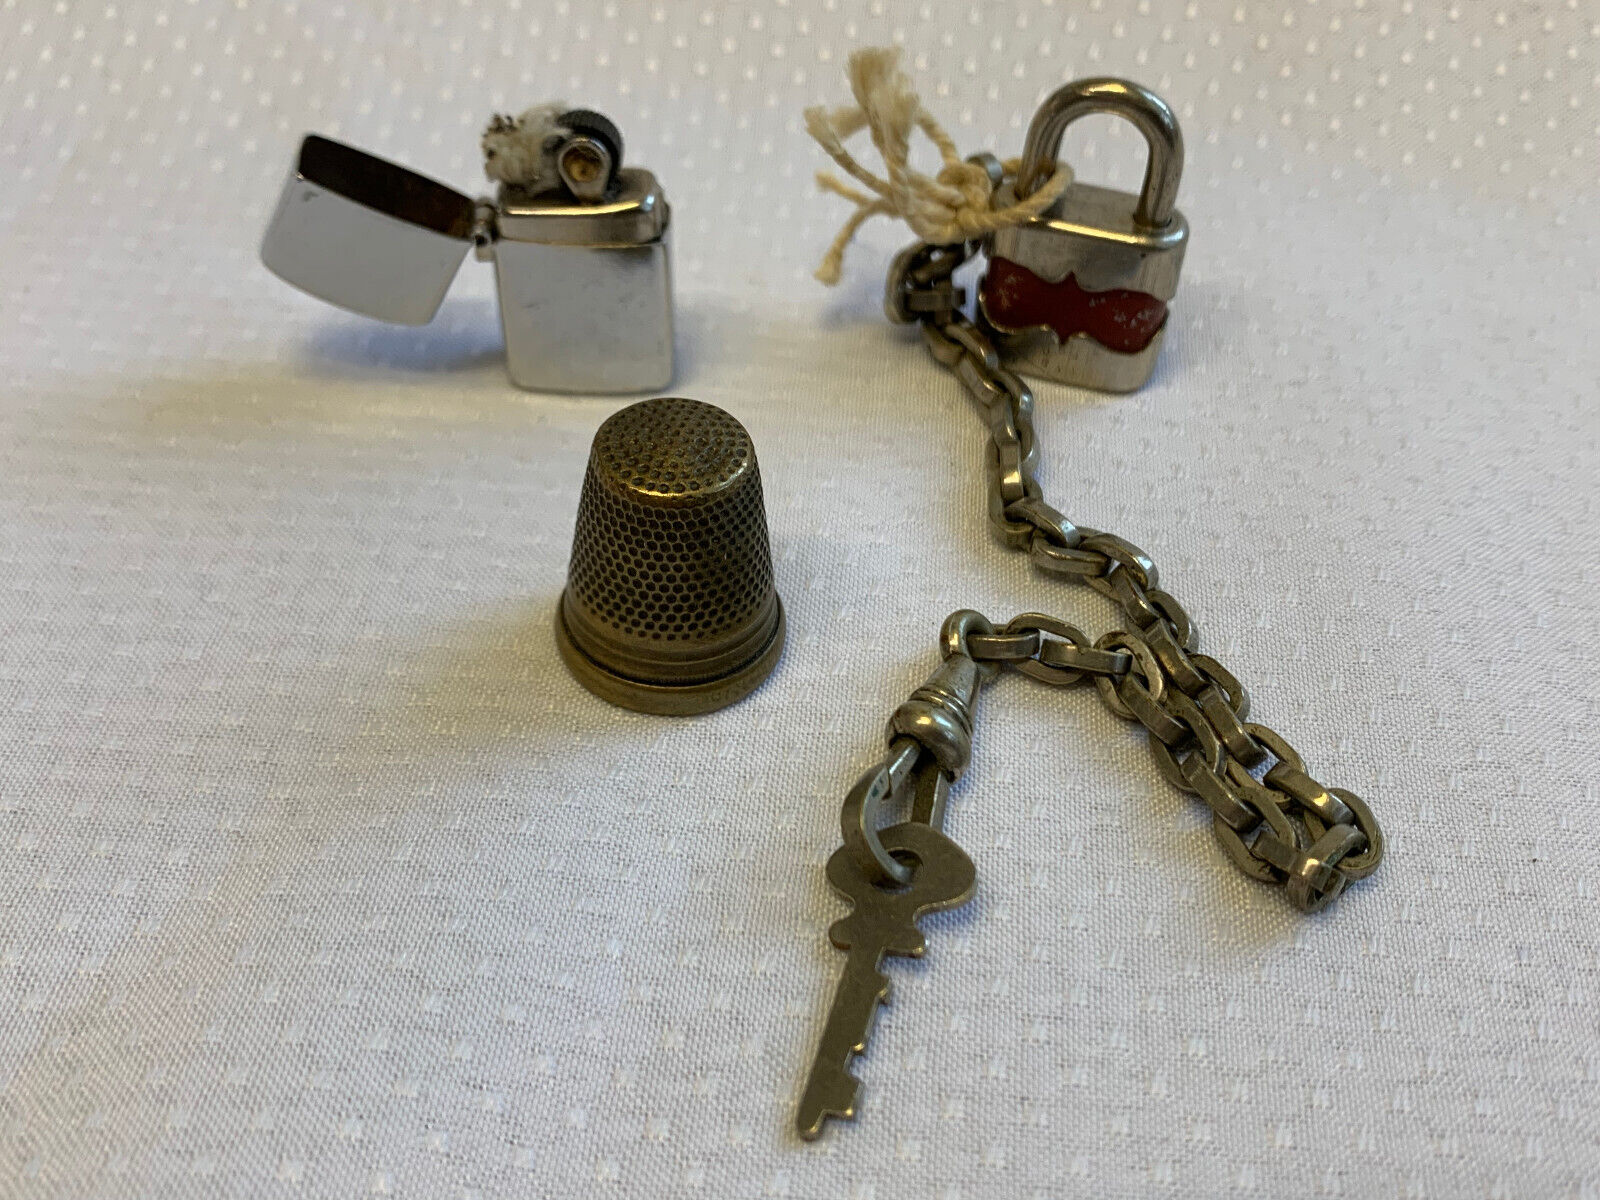 Antique Vtg Trinket Lot Bottle Tokens Coins Lock Ring Pocket Knife Collectibles Без бренда - фотография #3